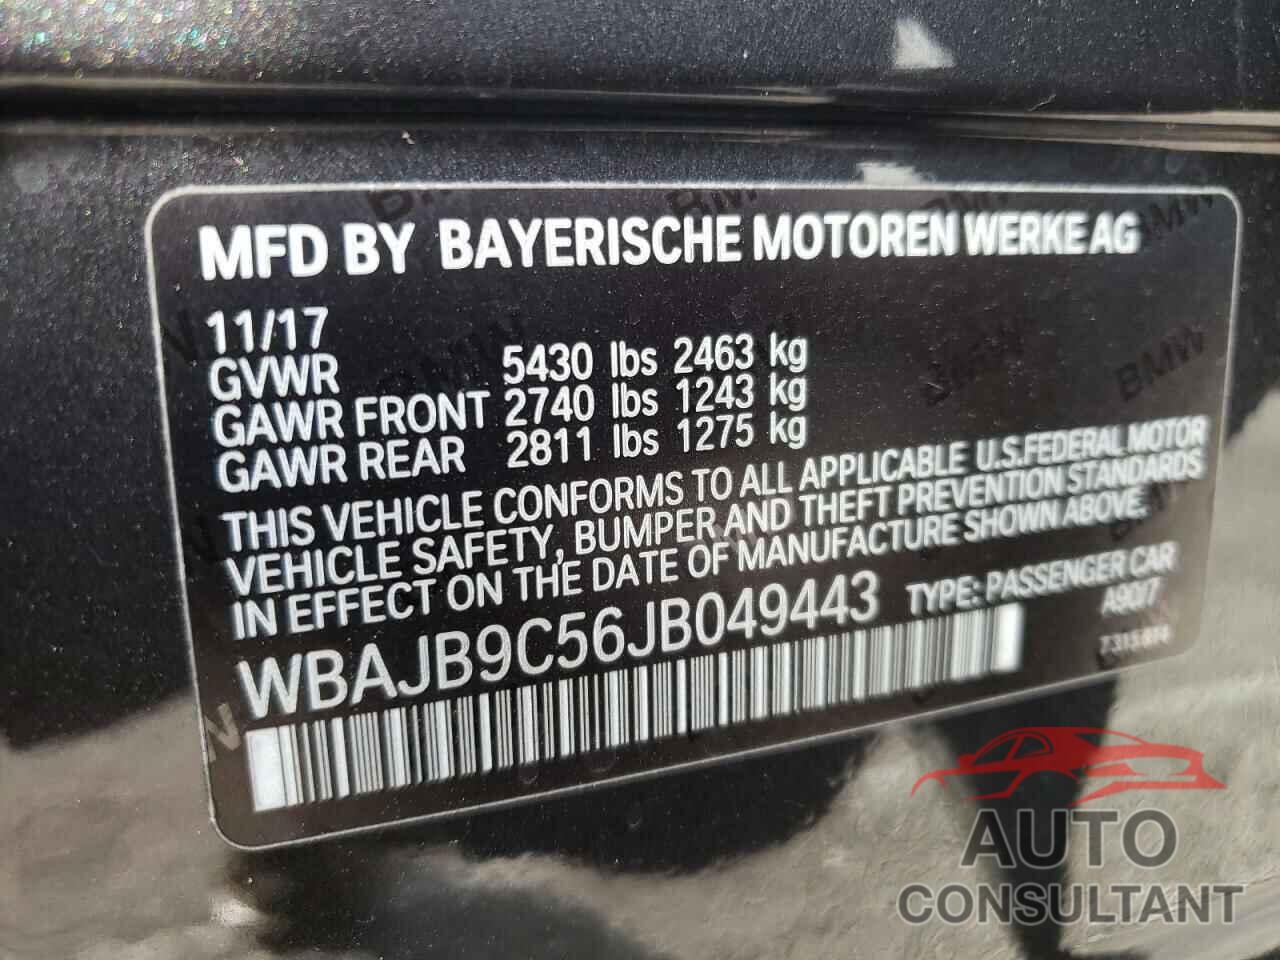 BMW M5 2018 - WBAJB9C56JB049443